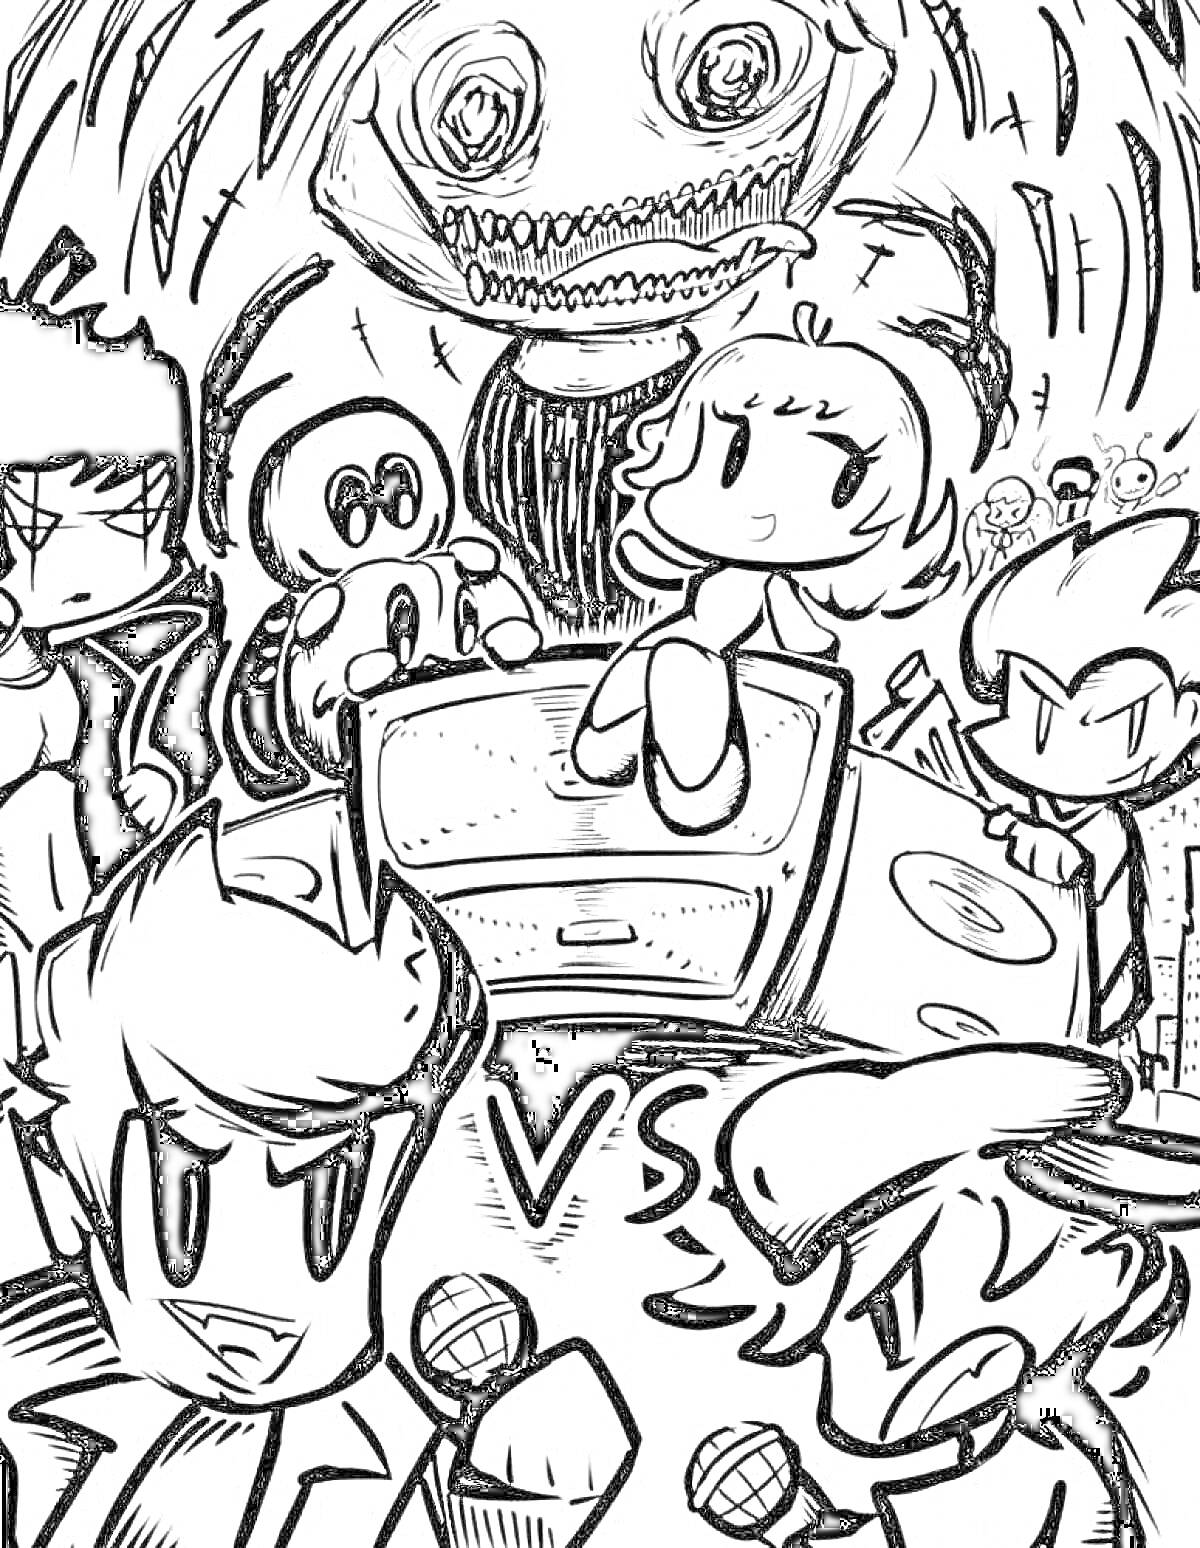 Раскраска Черно-белая раскраска с персонажами и микрофонами из Фредди Найт Фанкин, девочкой на колонке, загадочным большим существом и символом VS